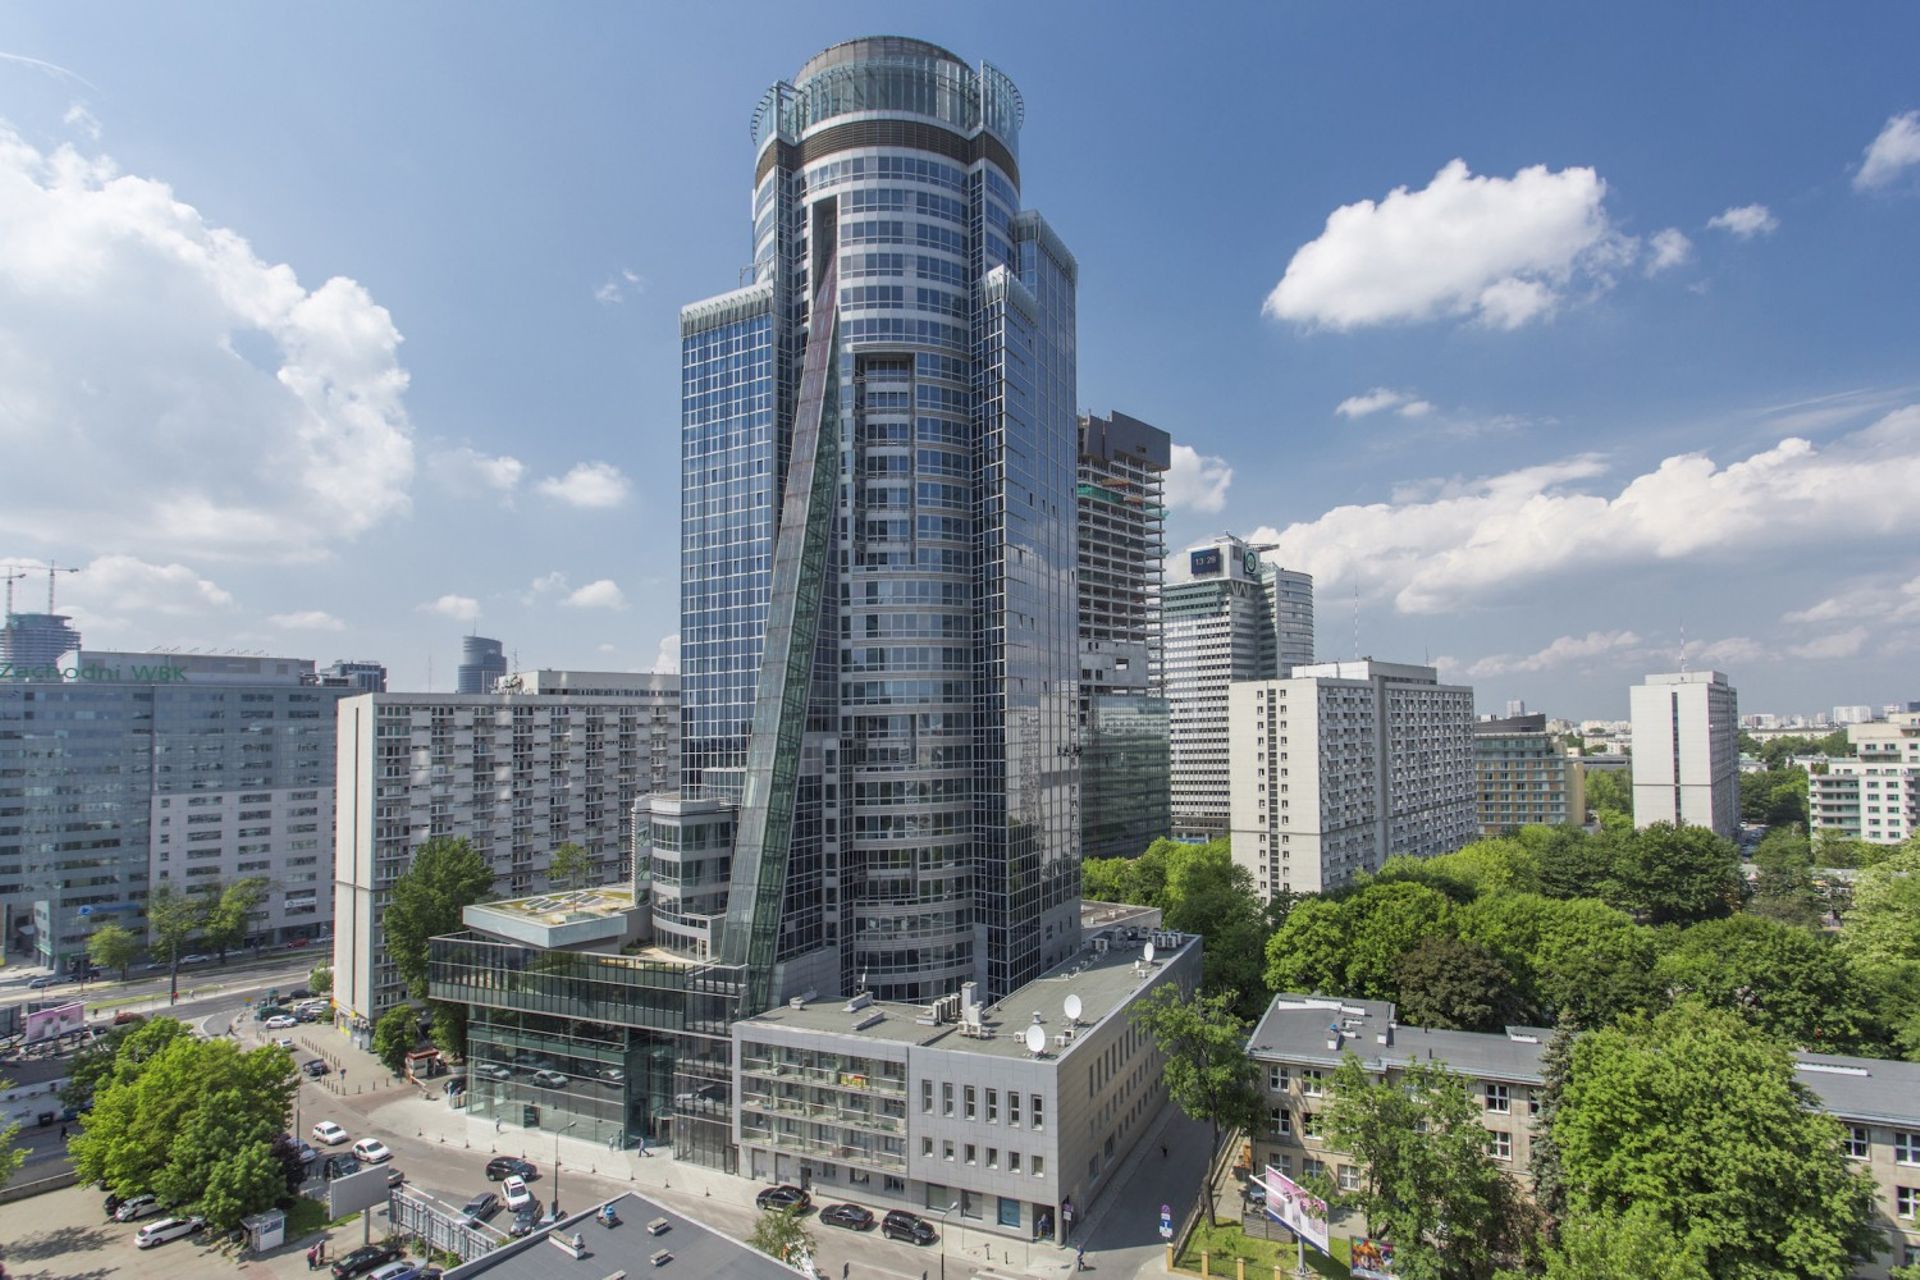  Biurowiec Spektrum Tower w Warszawie ma nowego zarządcę